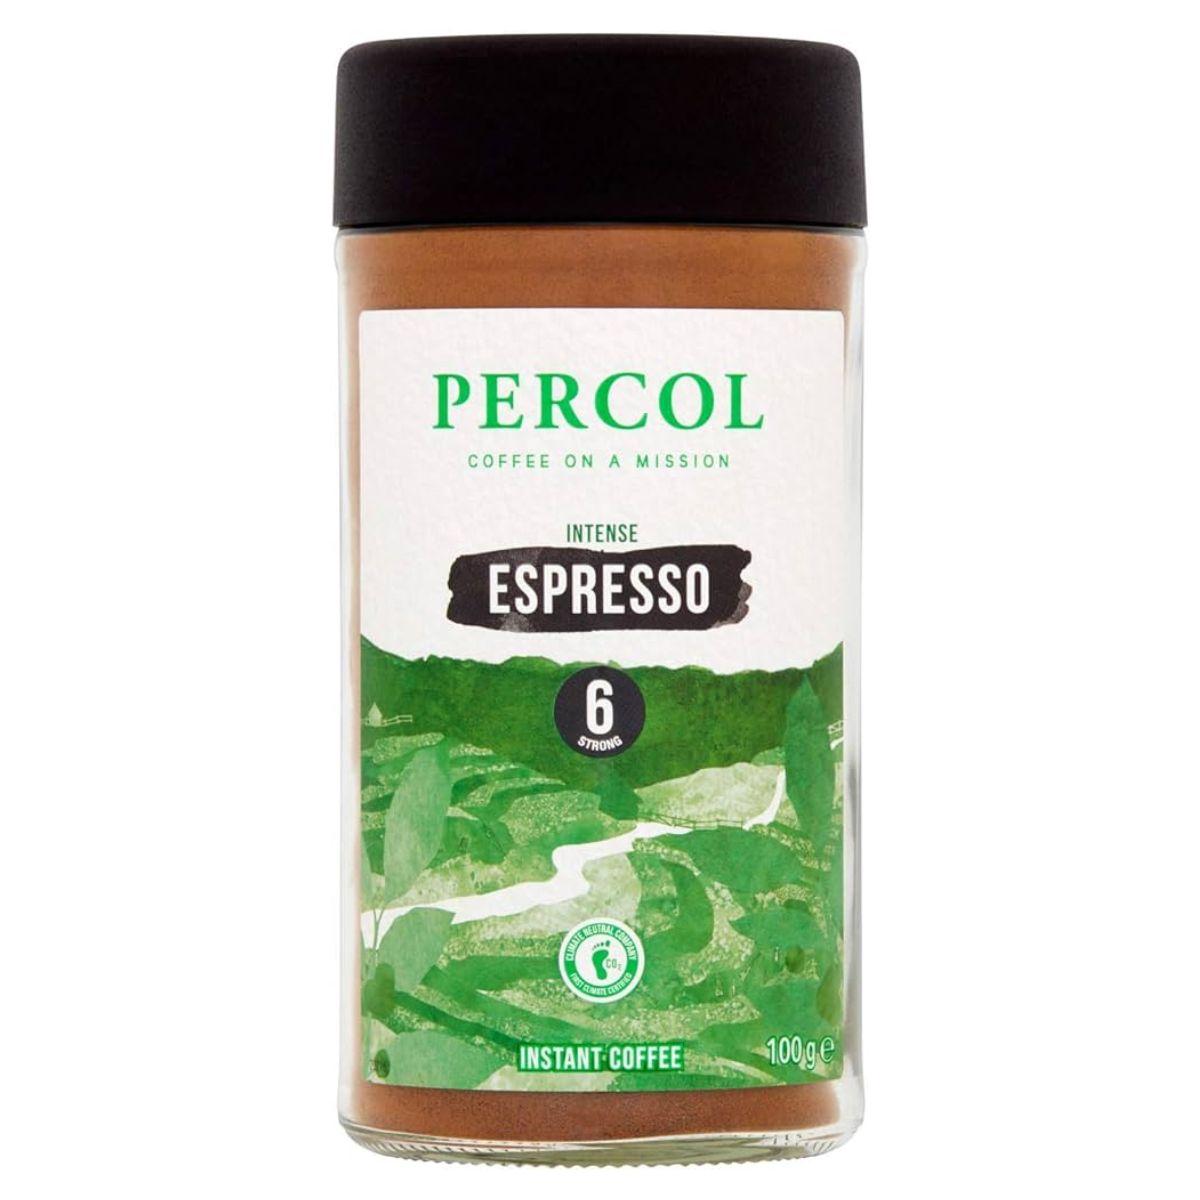 Percol - Intense Espresso Instant Coffee - 100g 6 oz.